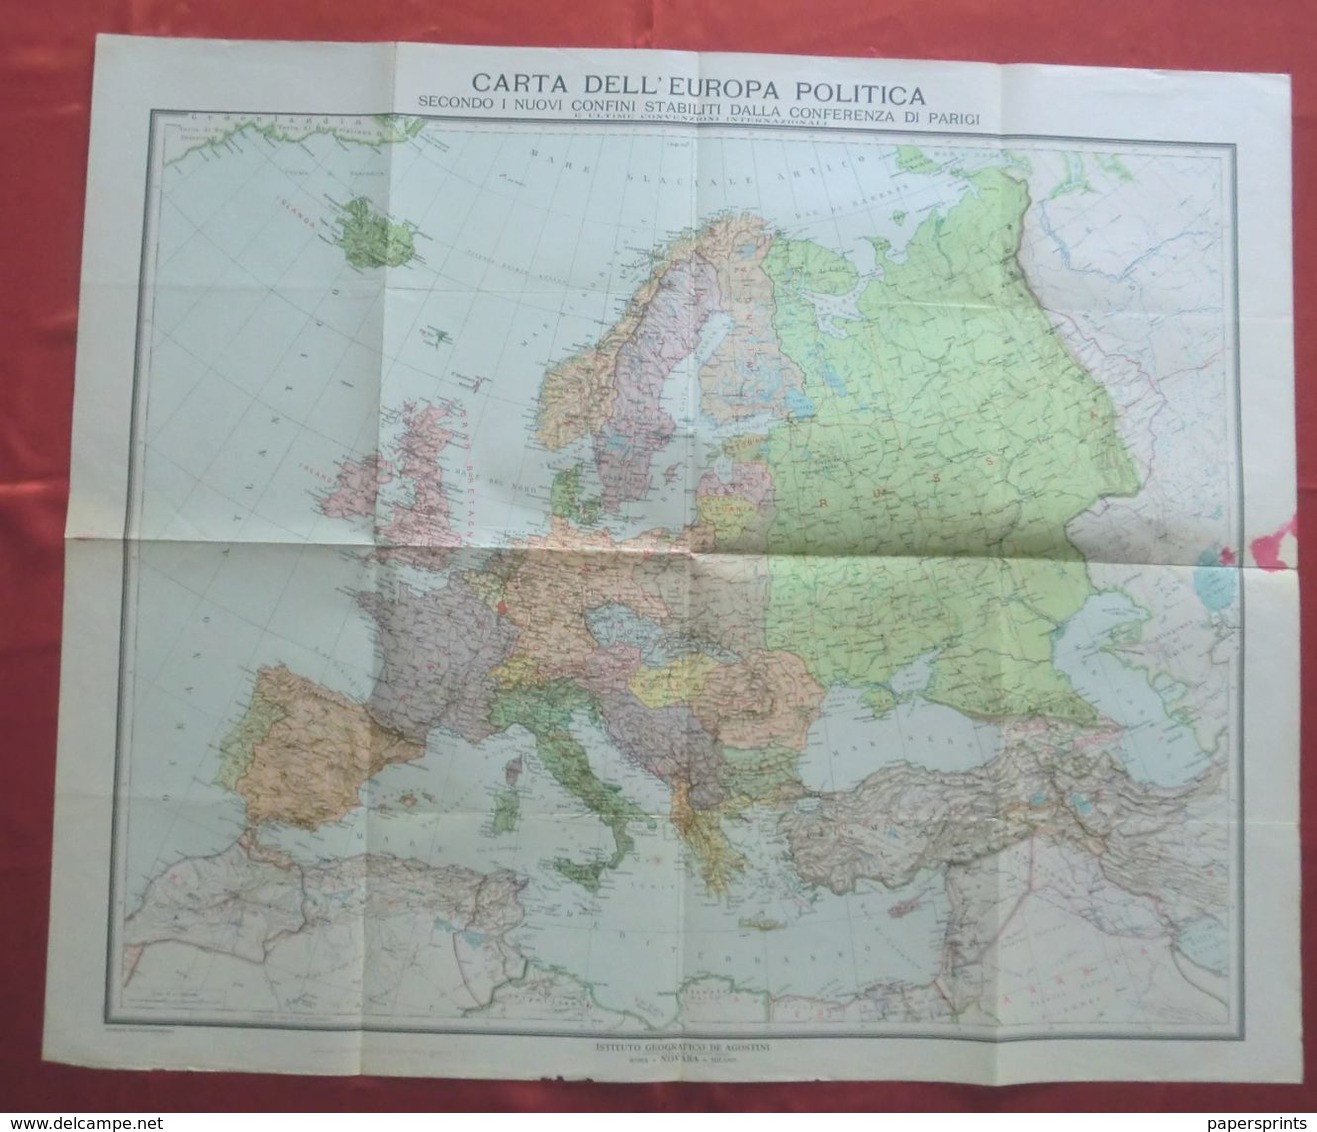 CARTA DELL'EUROPA POLITICA (1919), Istituto Geografico De Agostini Scala 1:7.500.000 - Carte Geographique